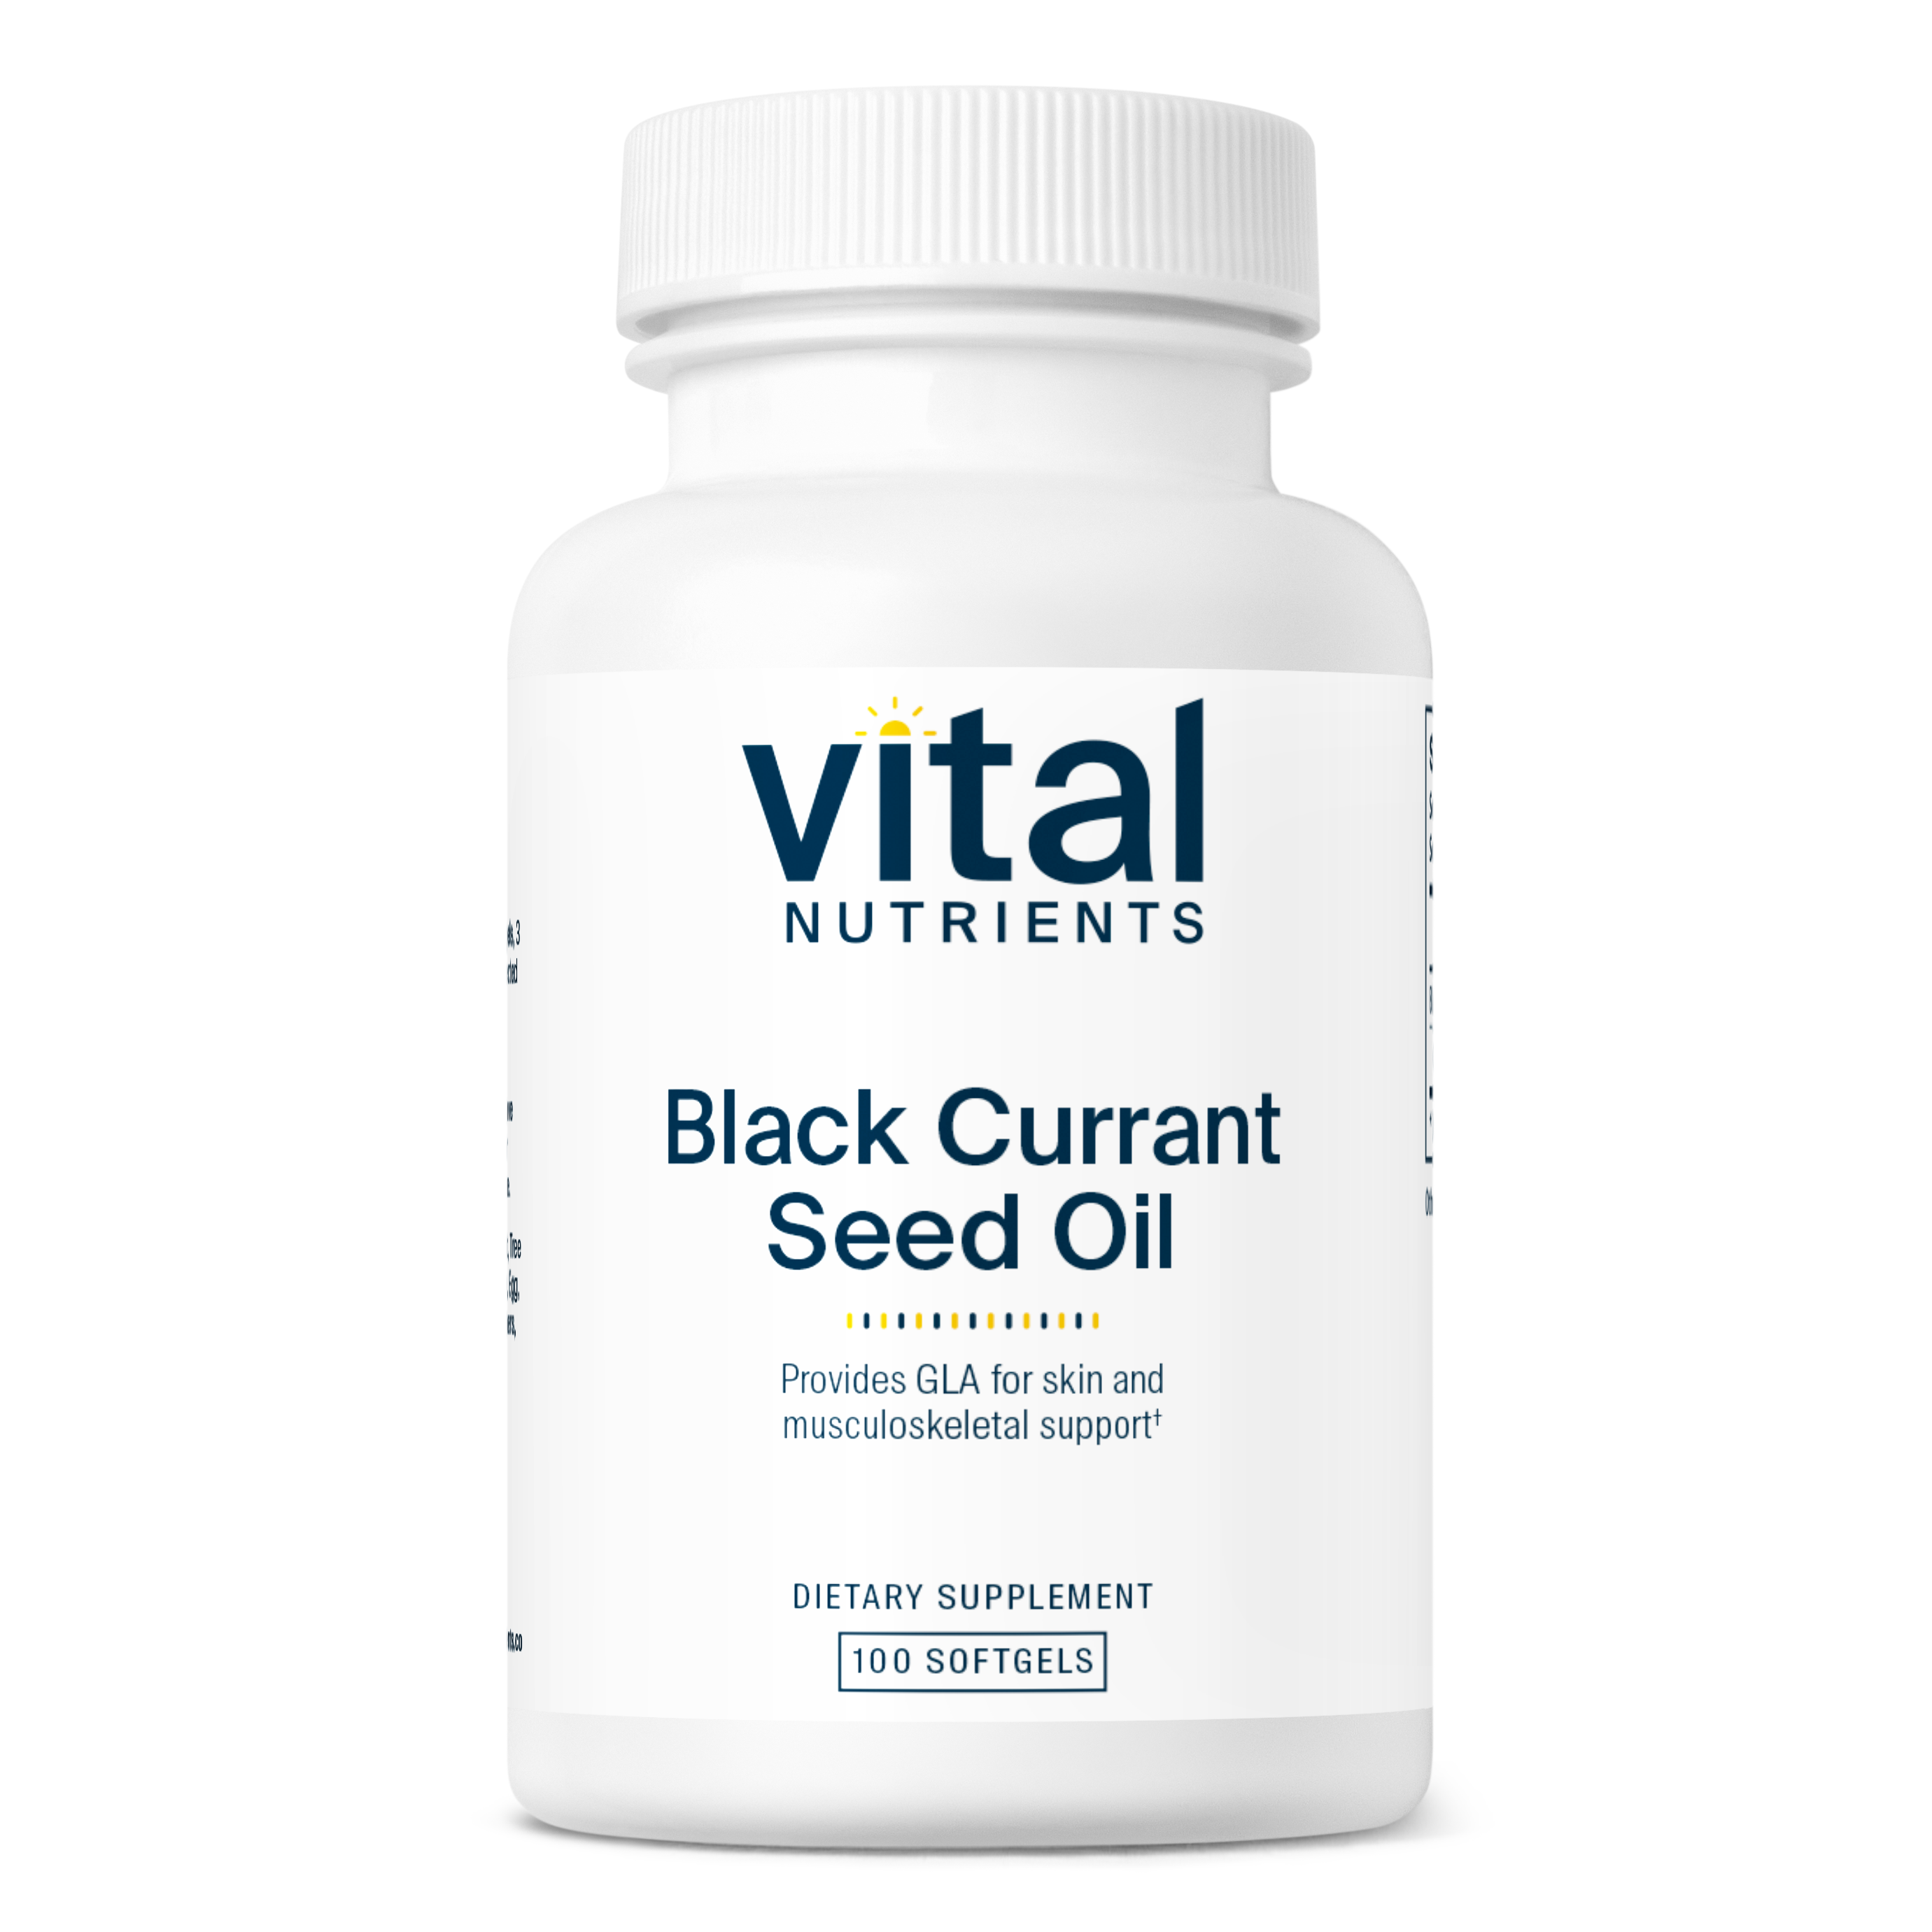 Black Currant Seed Oil 500mg-GLA 70mg